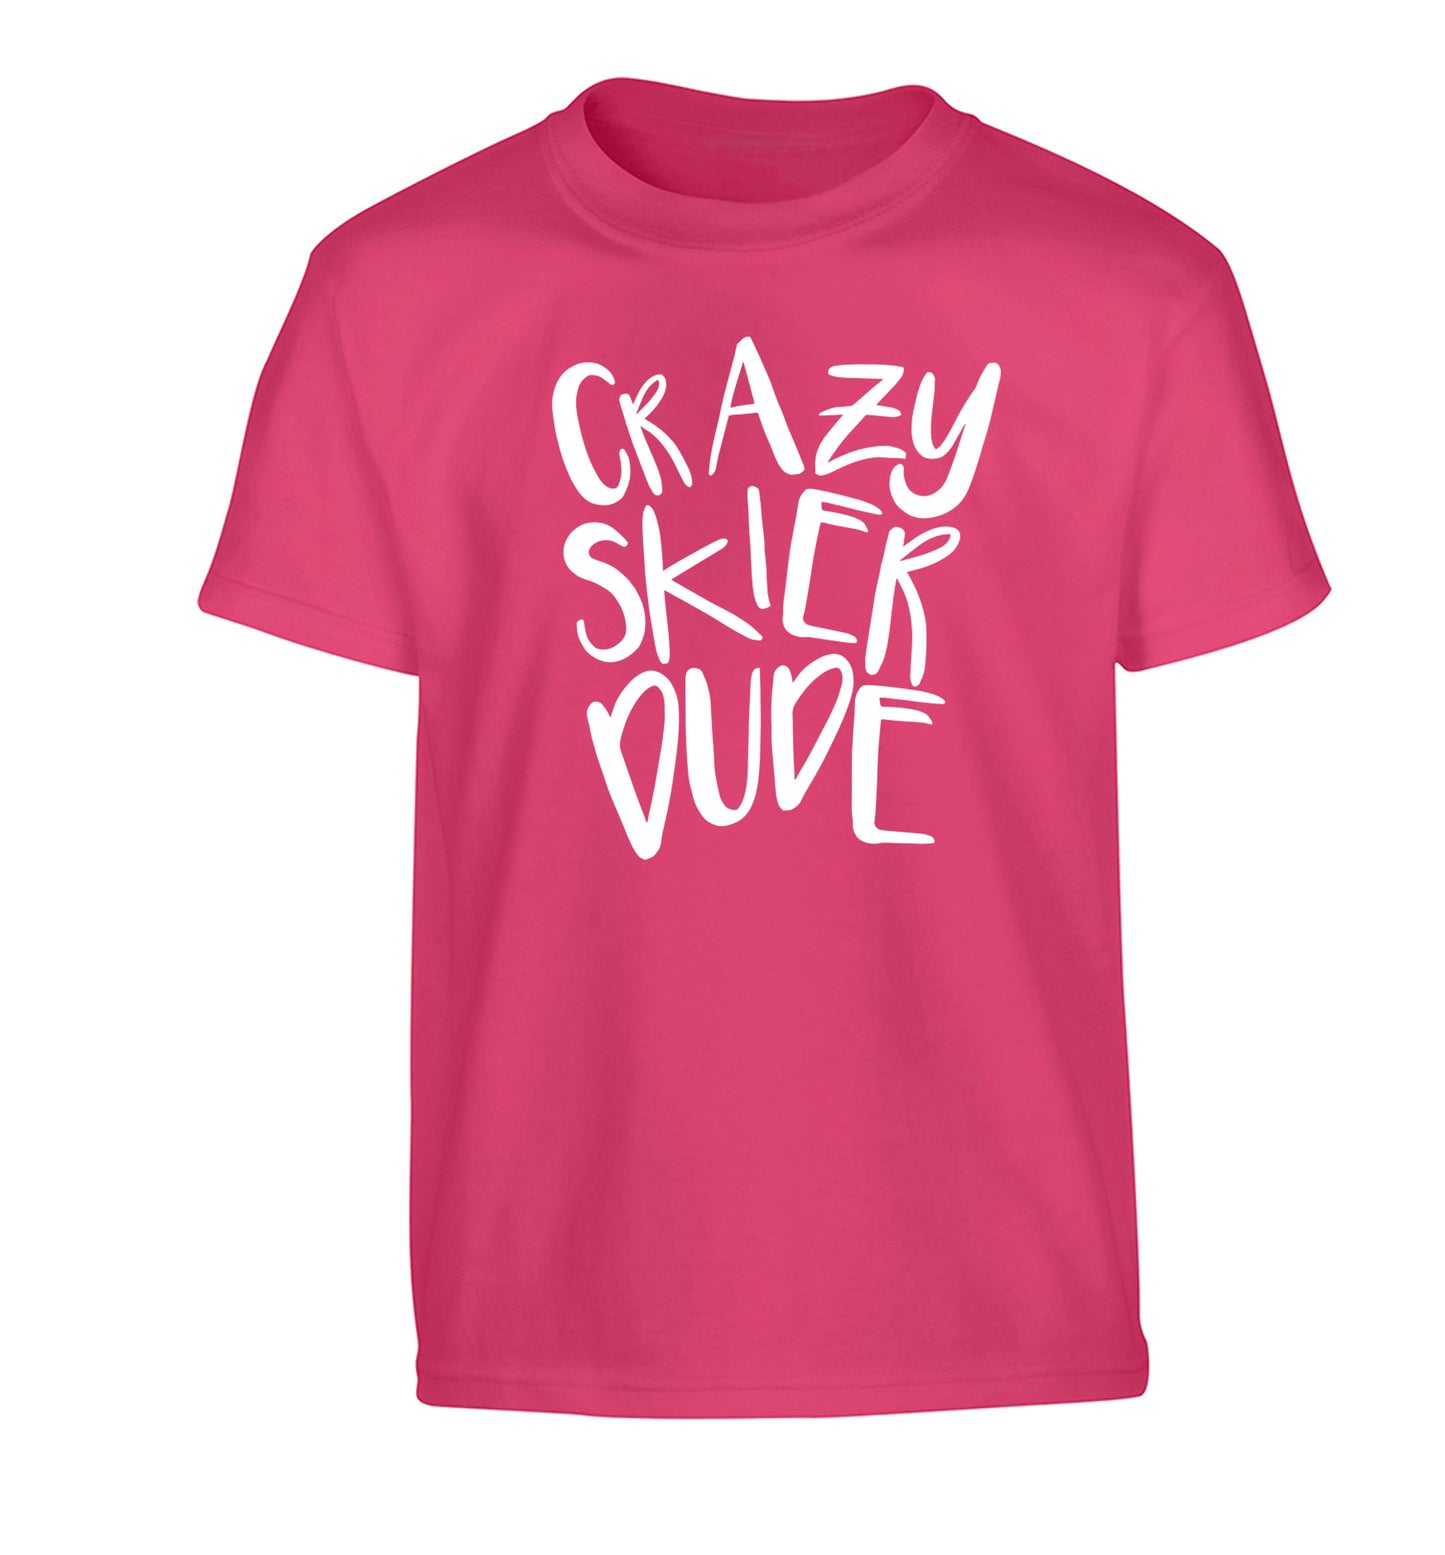 Crazy skier dude Children's pink Tshirt 12-14 Years